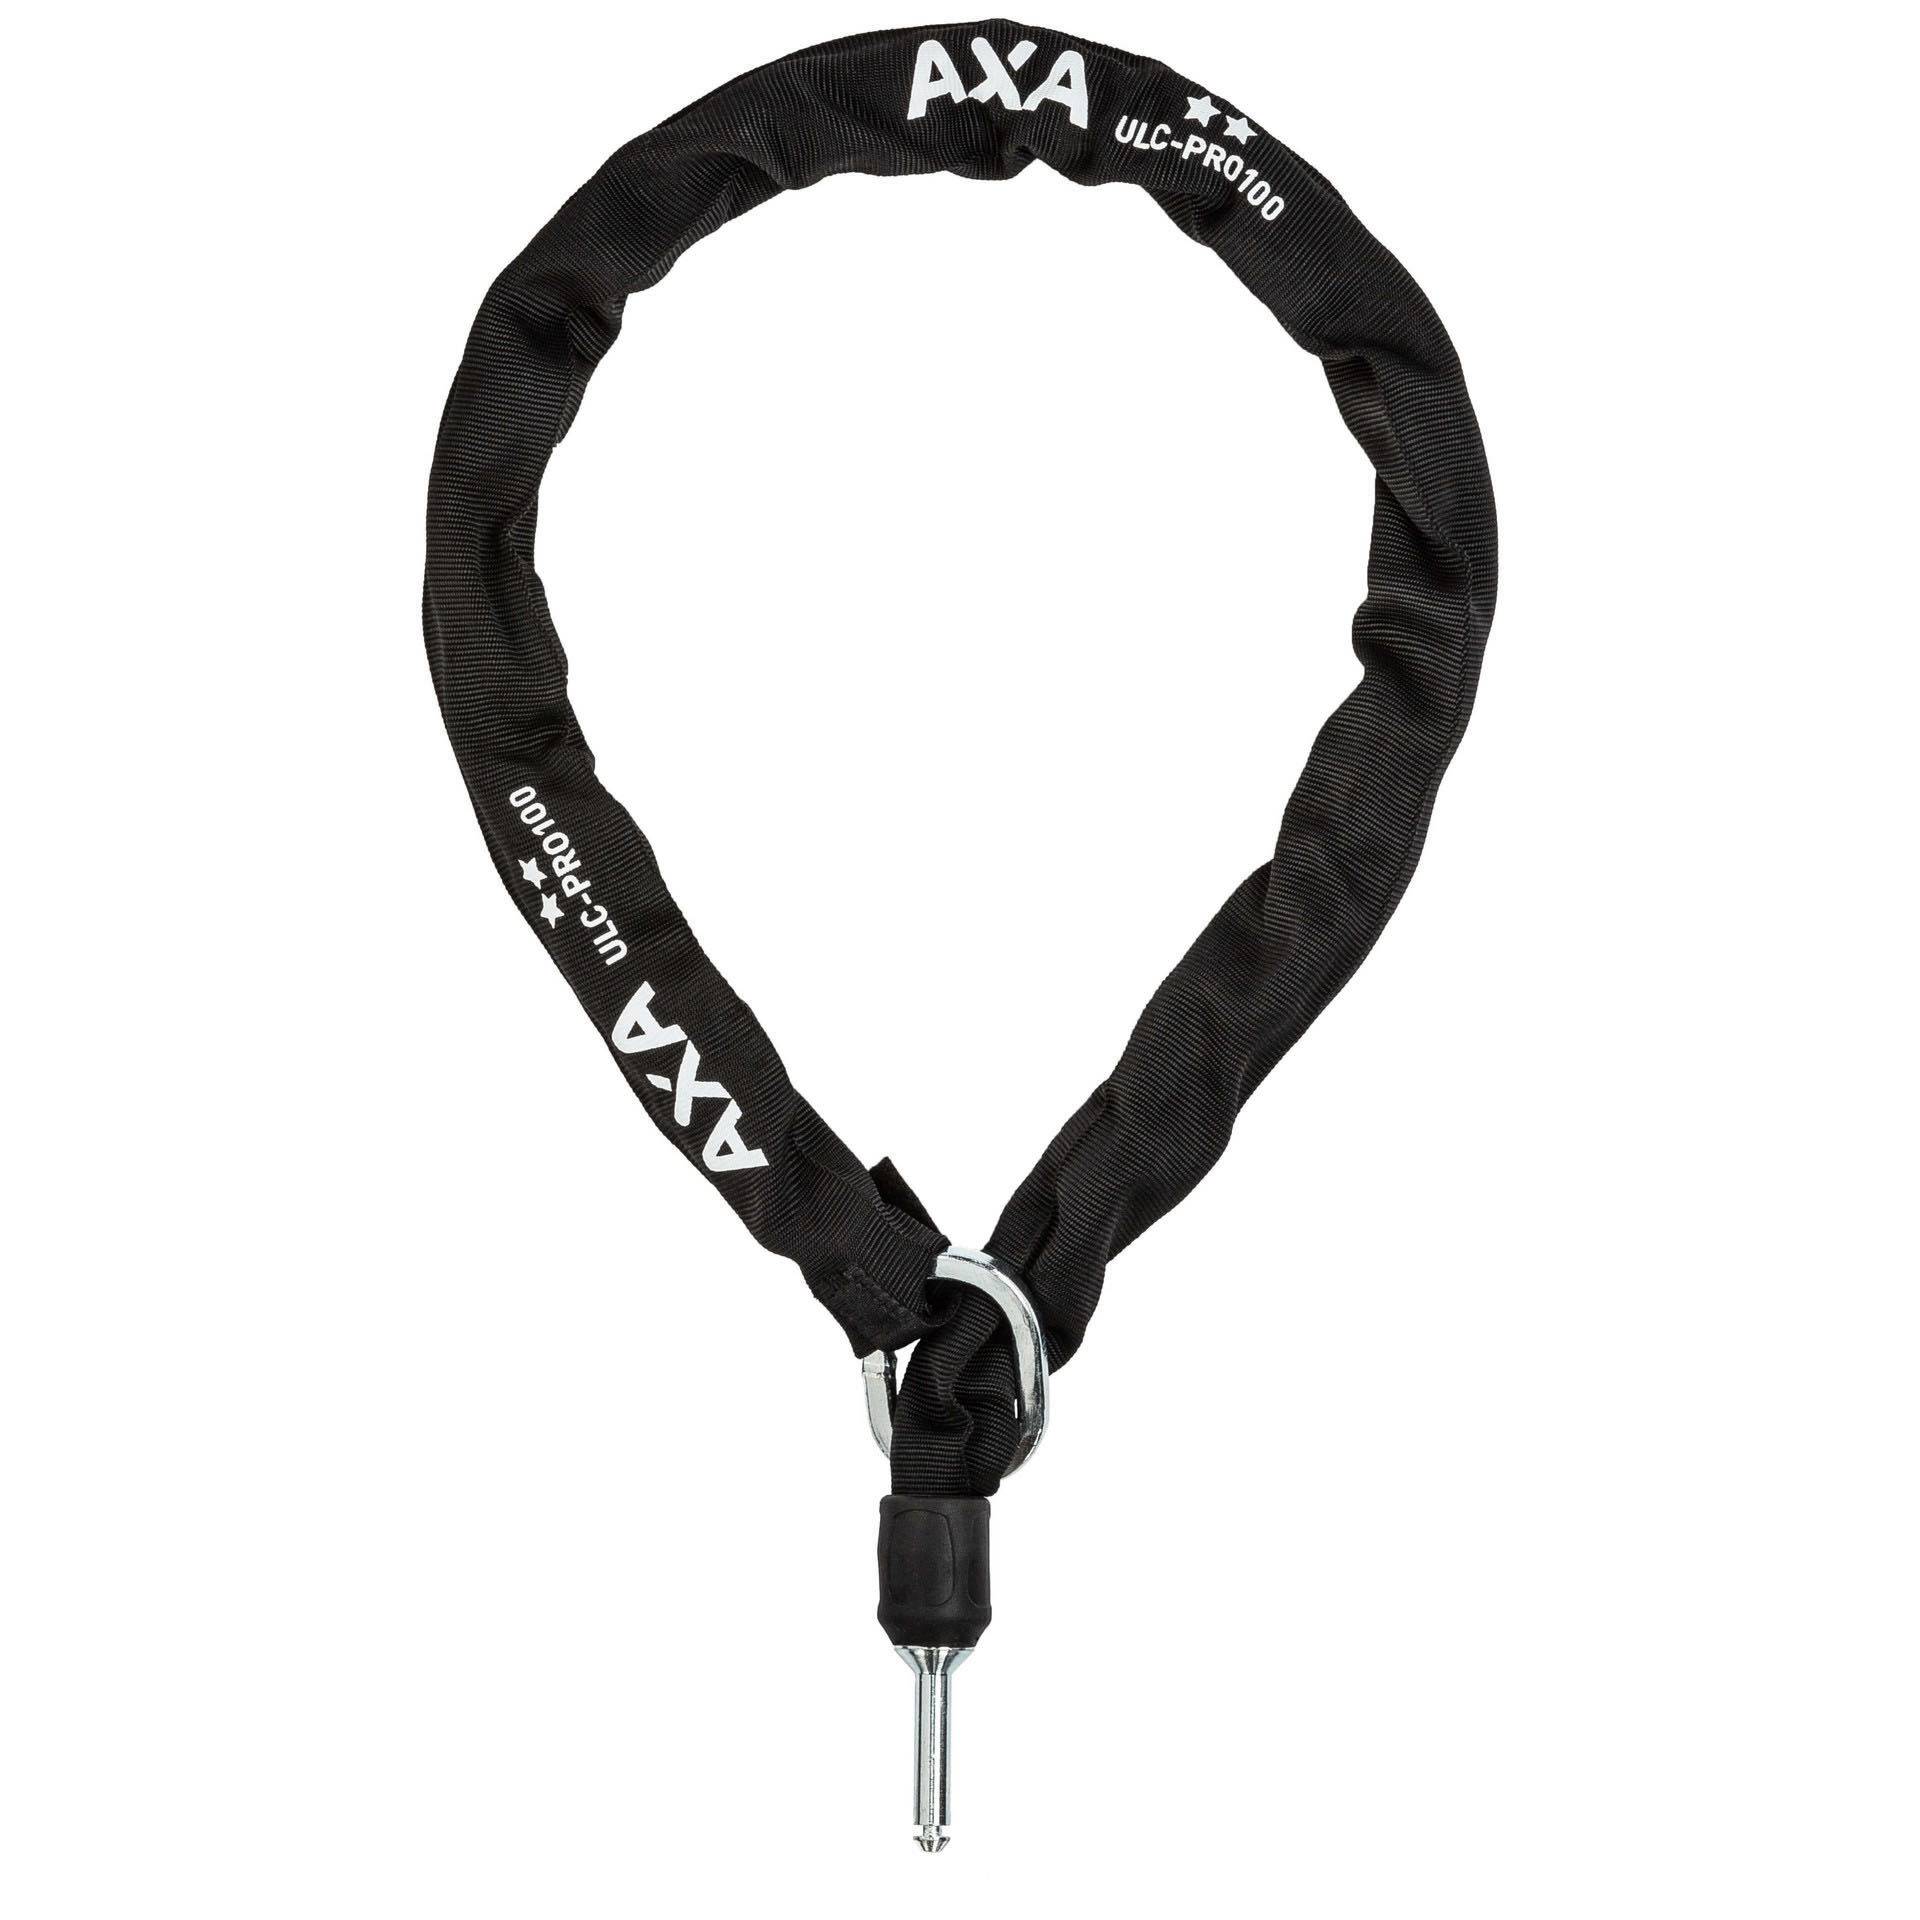 AXA Anschließkette ULC Pro100 Fahrrad schwarz von AXA